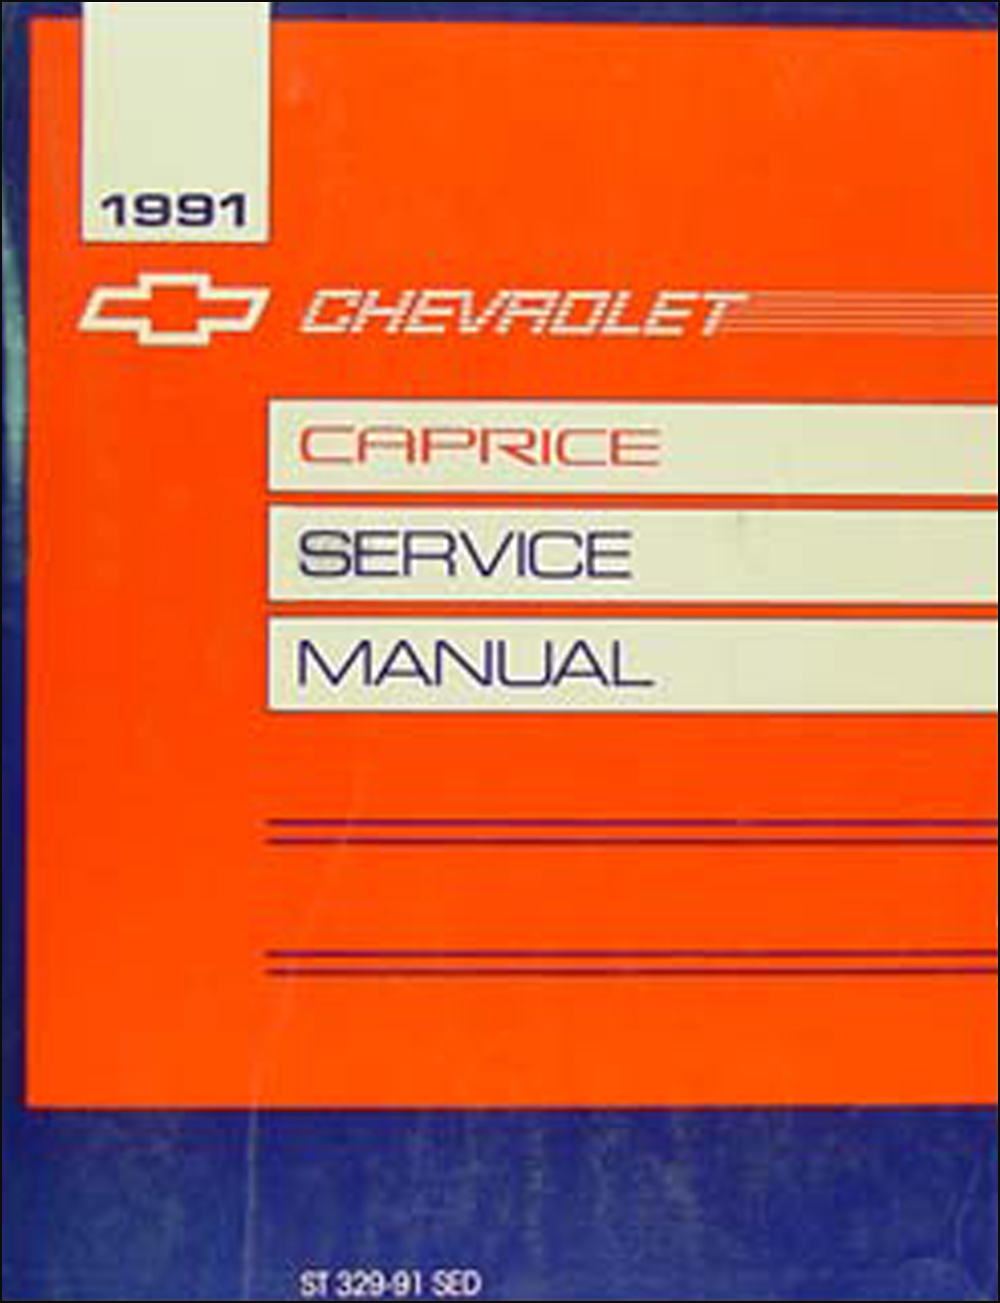 1991 Chevy Caprice Sedan Repair Manual Original 